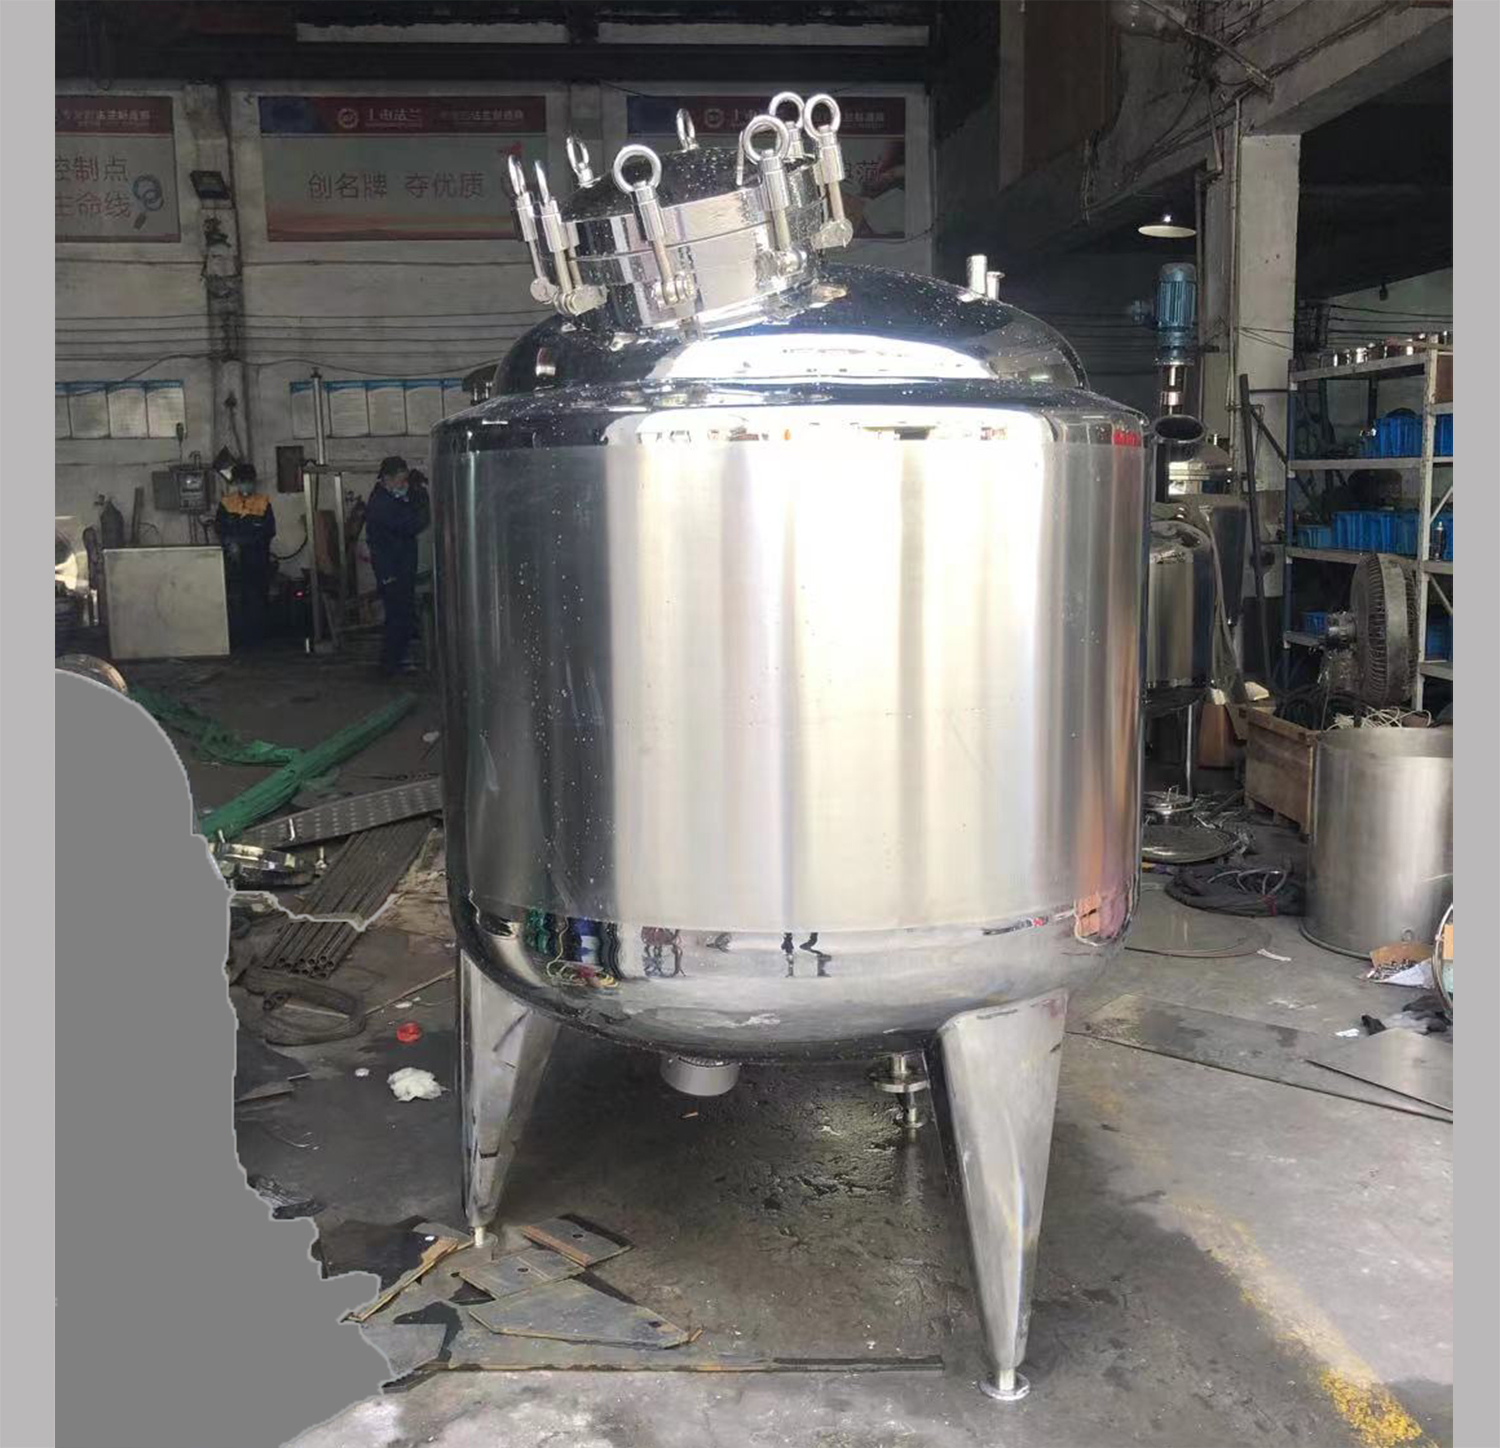 Tanques de almacenamiento de una sola capa de leche higiénica sanitaria pulida de grado alimenticio SS304 SS316L de acero inoxidable 